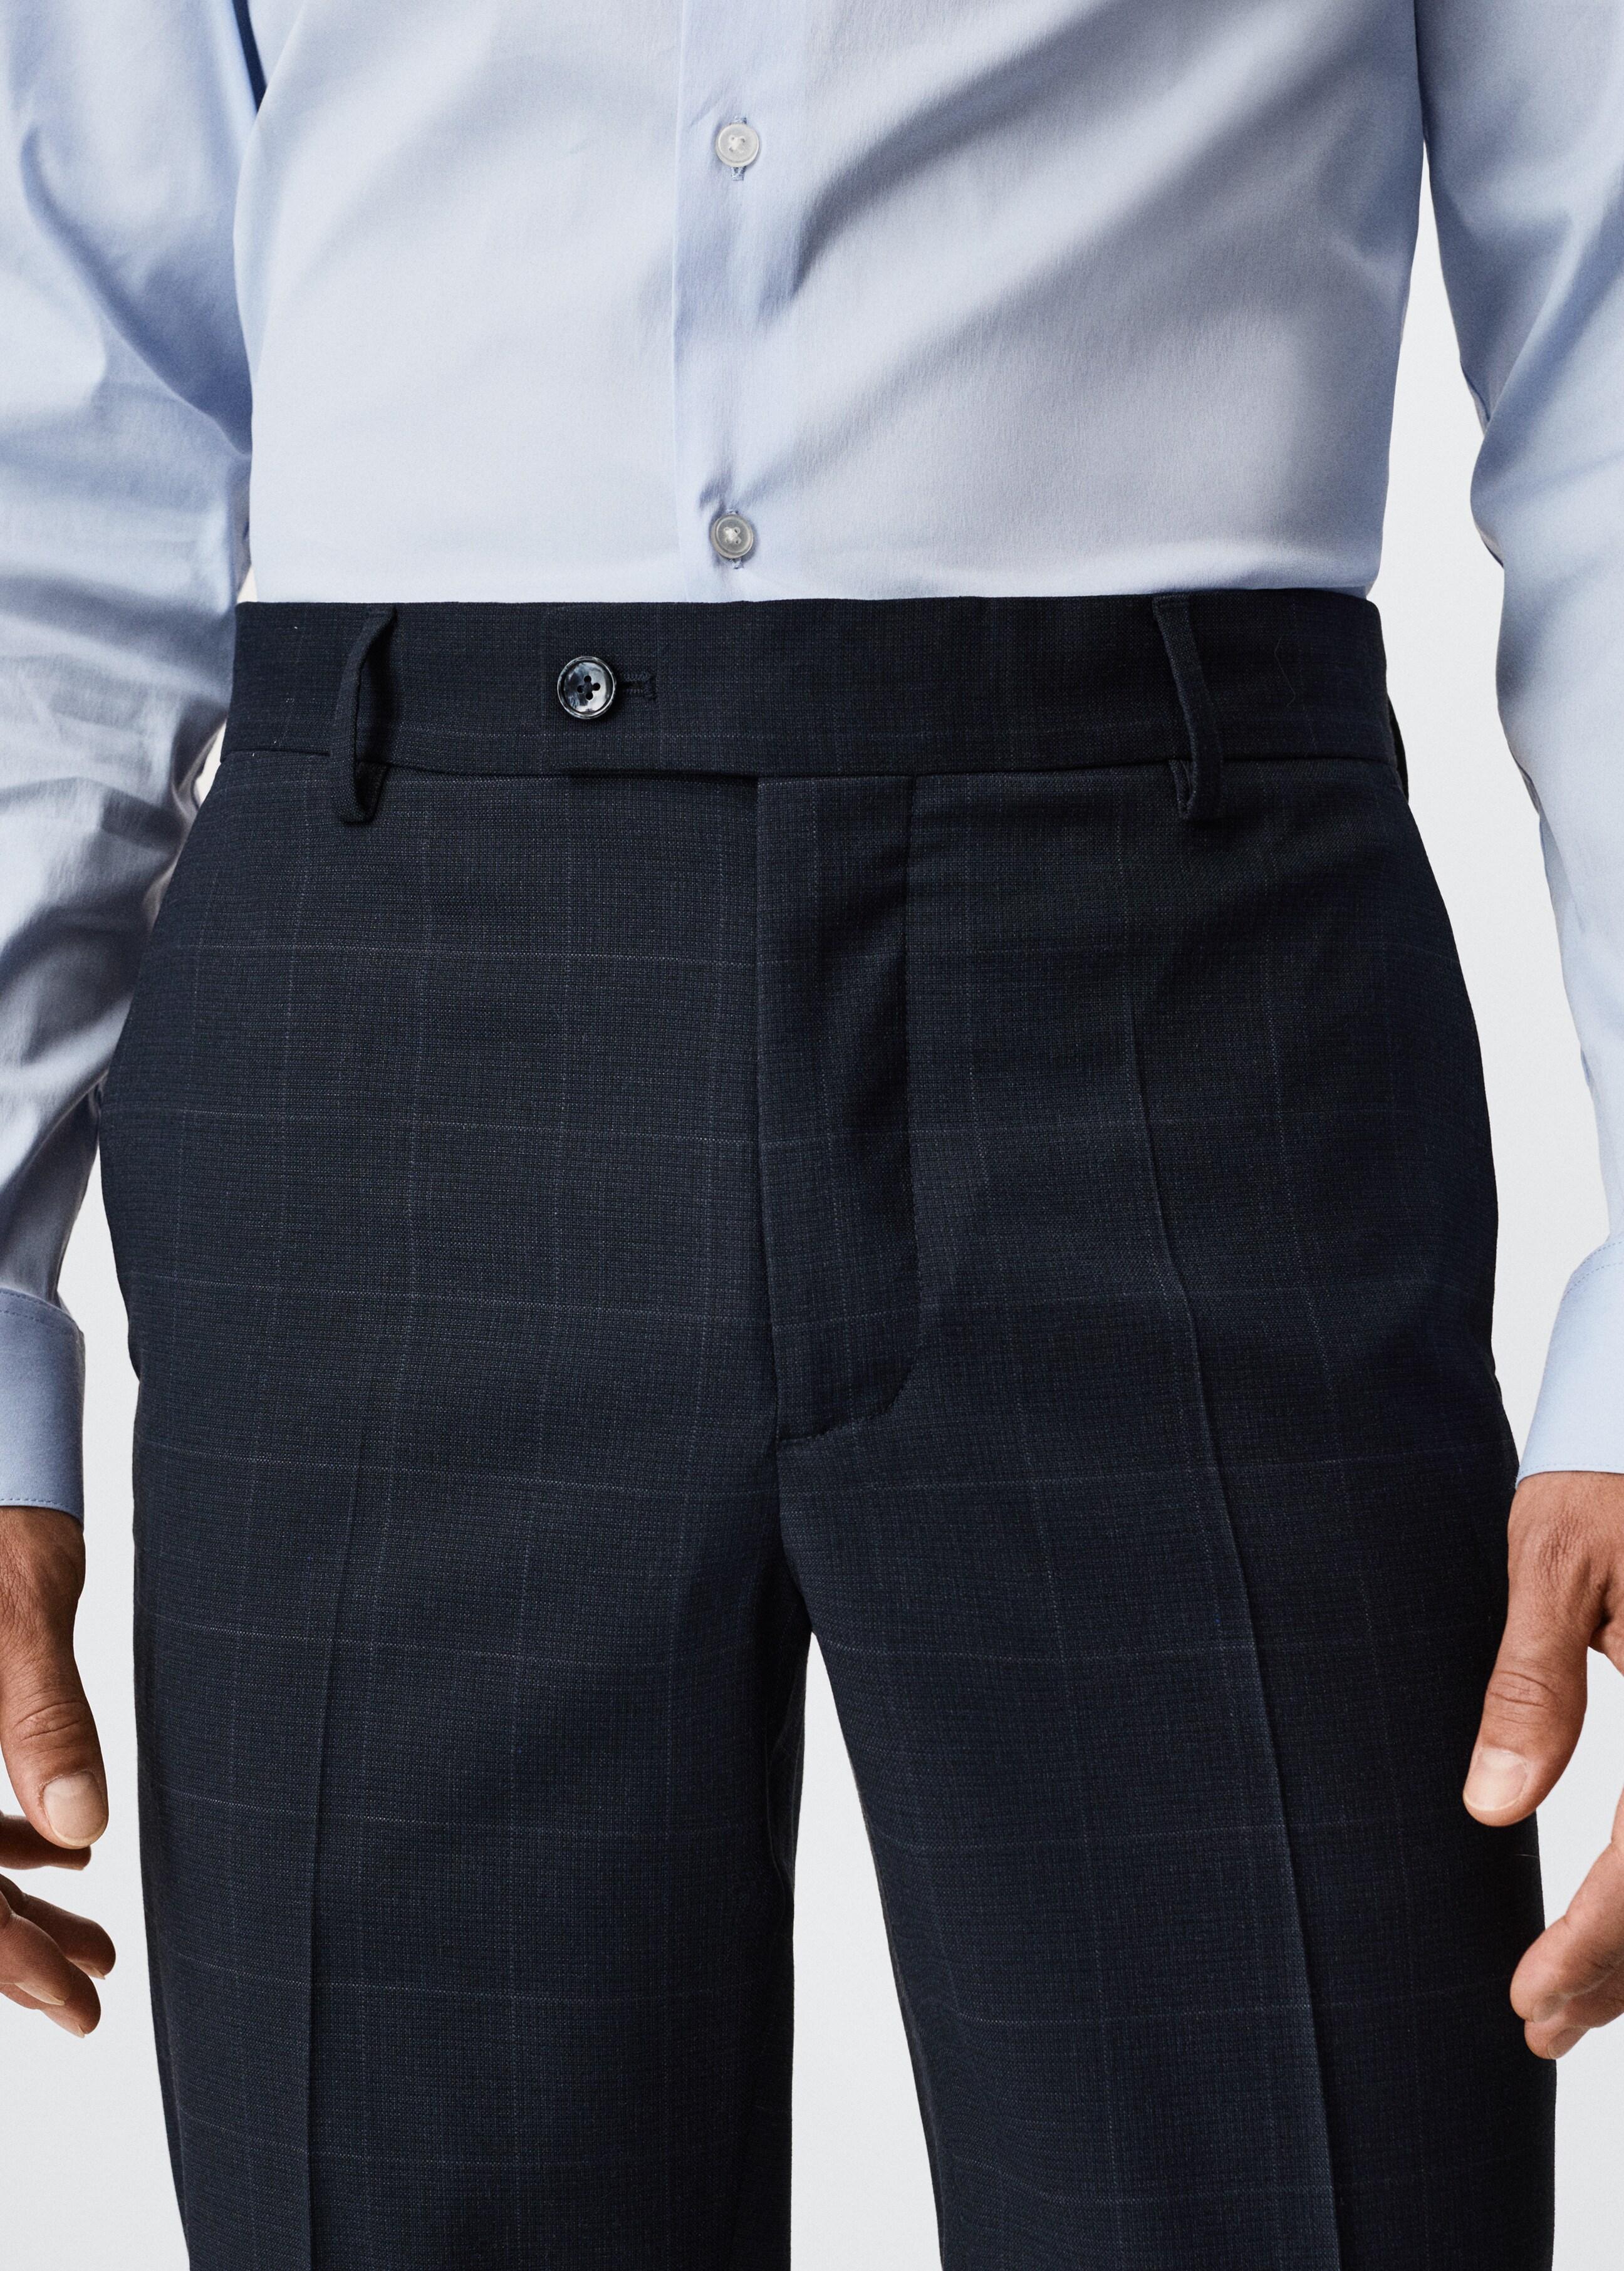 Pantalón traje slim fit cuadros - Detalle del artículo 1